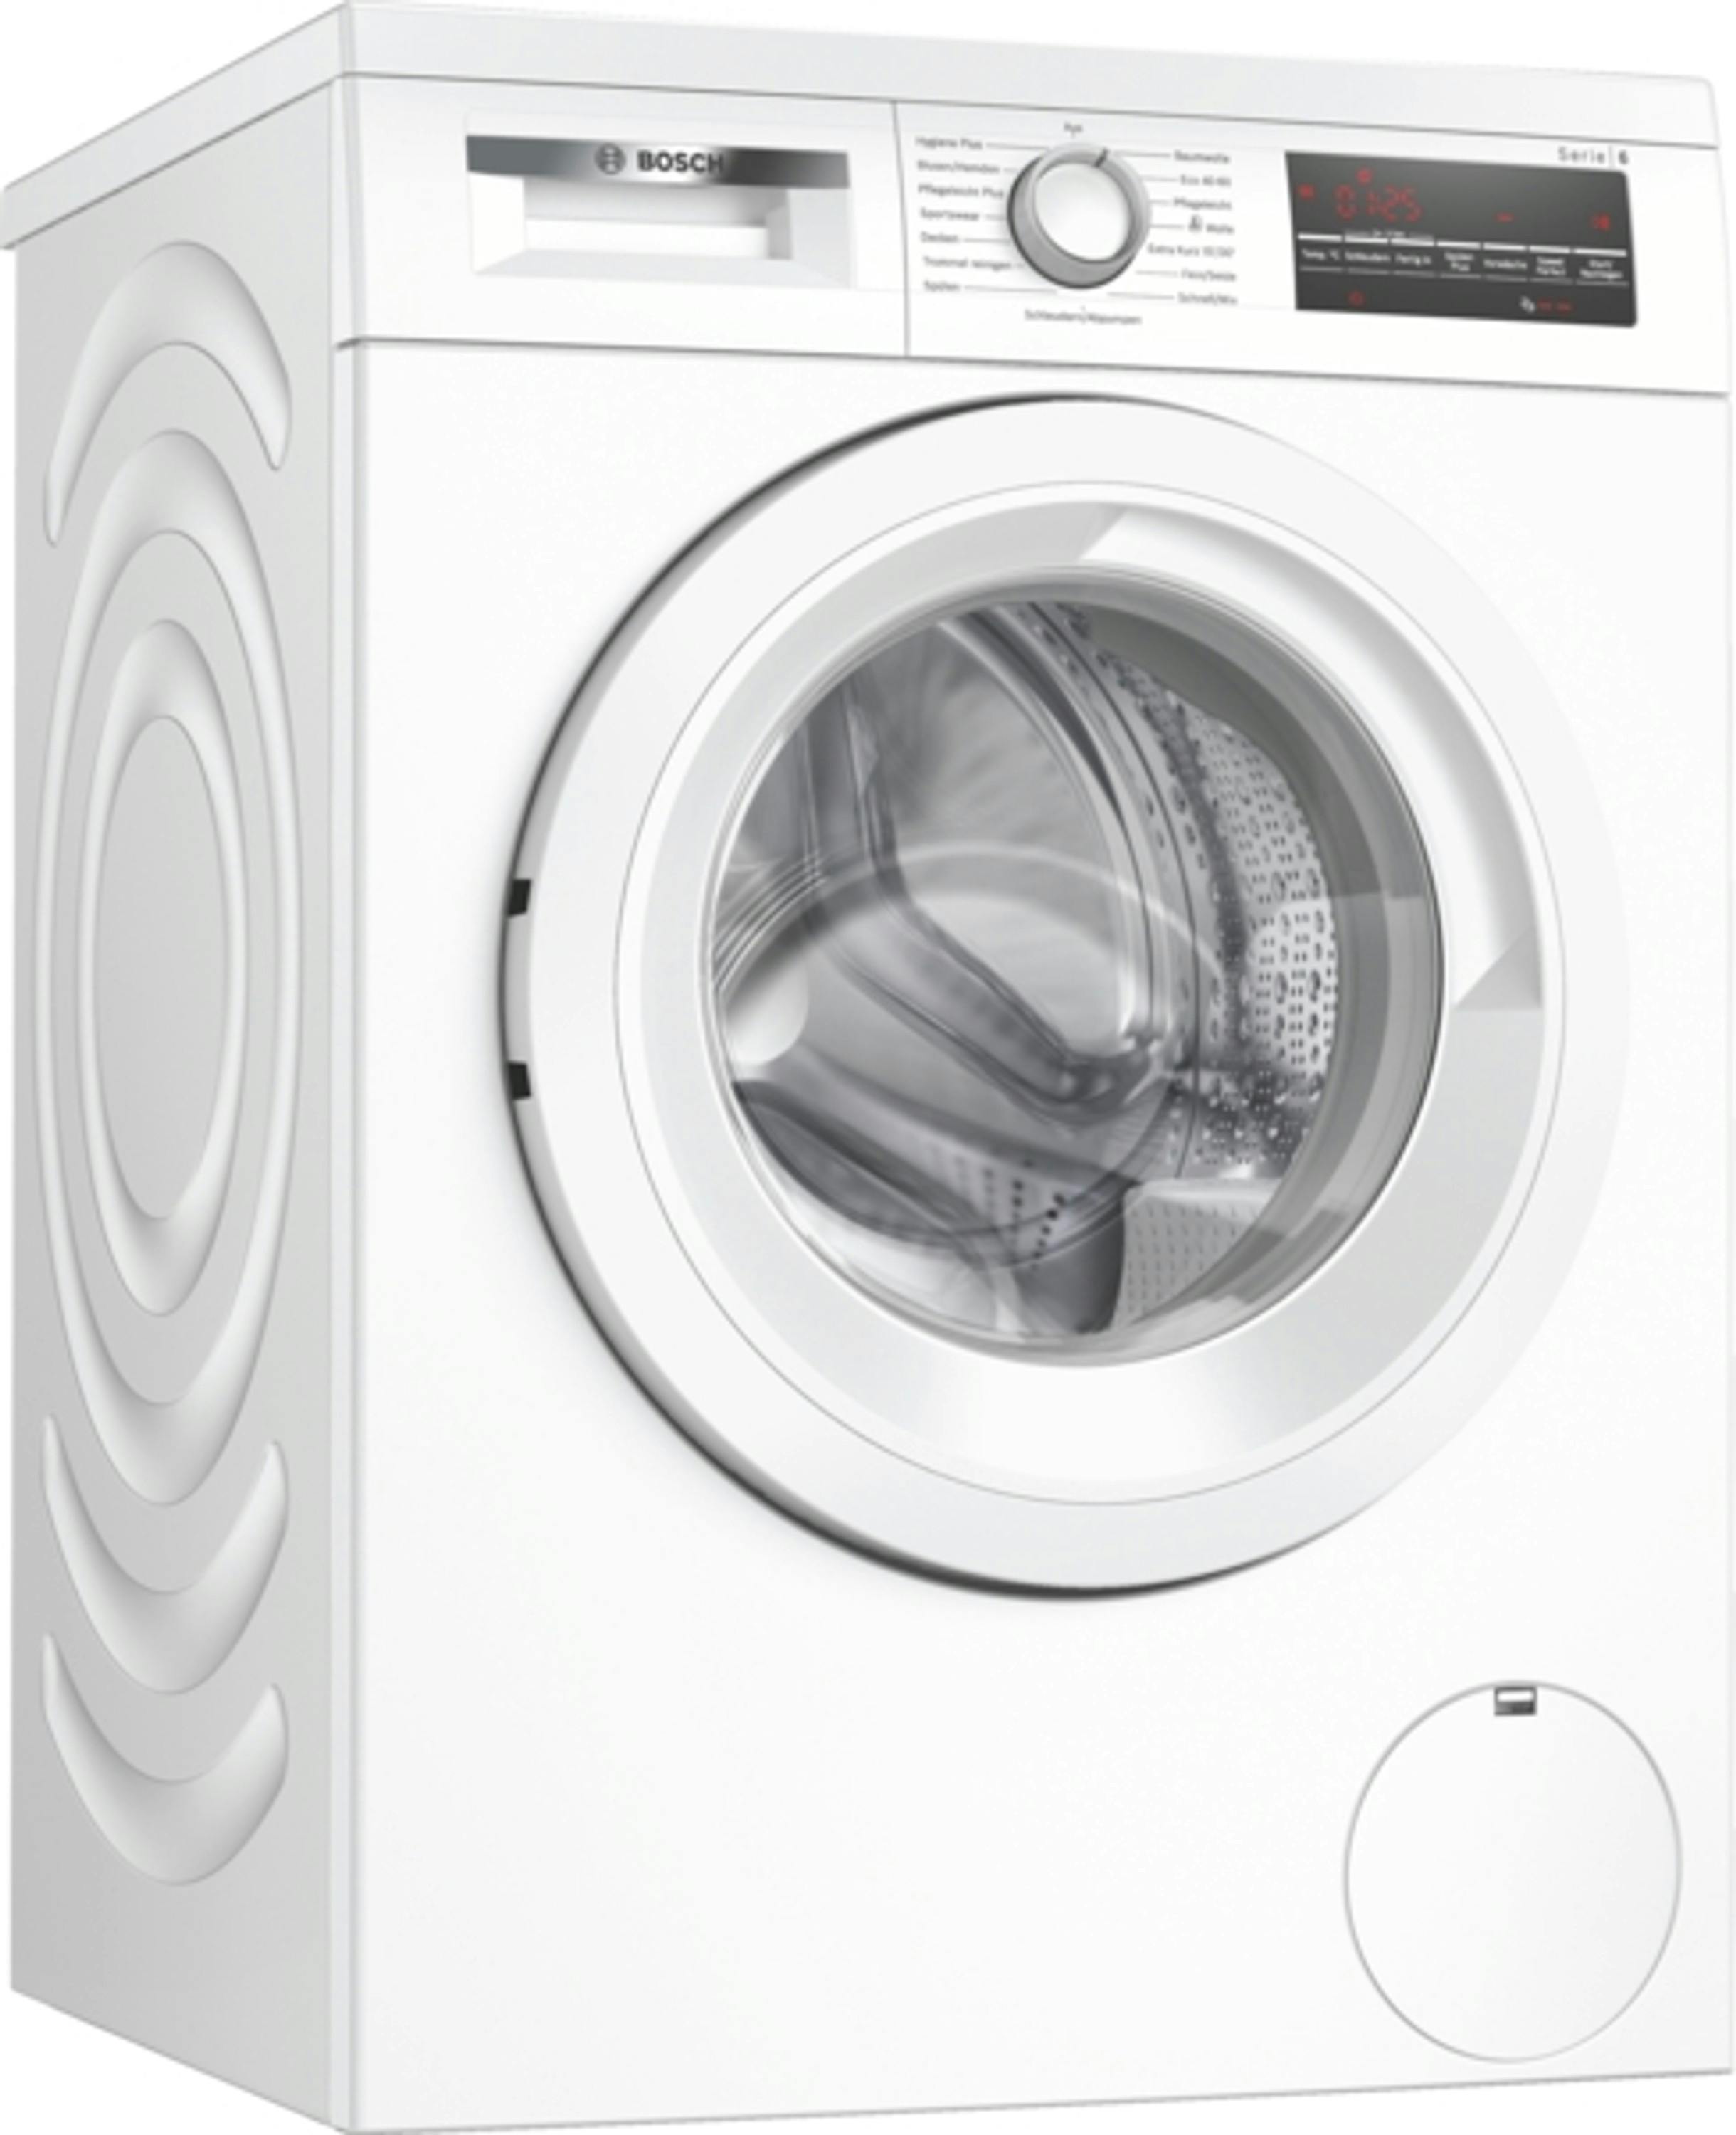 Bosch Serie 6 Waschmaschine, kg, 9 WUU28T21 unterbaufähig | METRO Marktplatz 1400 Frontlader, U/min